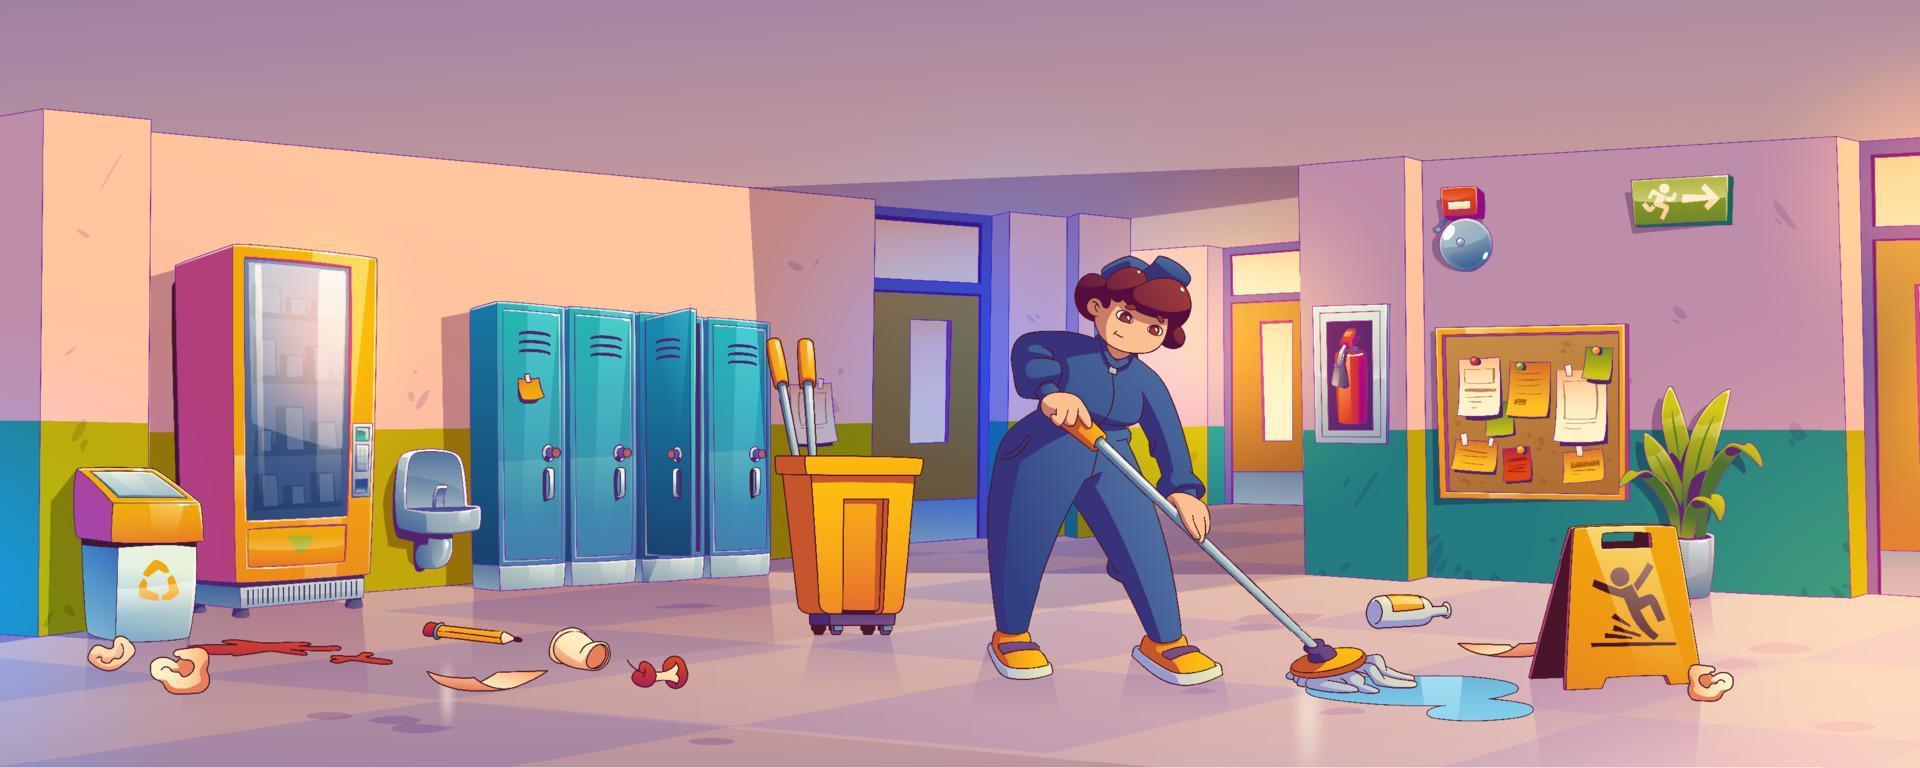 mulher zeladora limpando o chão no corredor da escola vetor